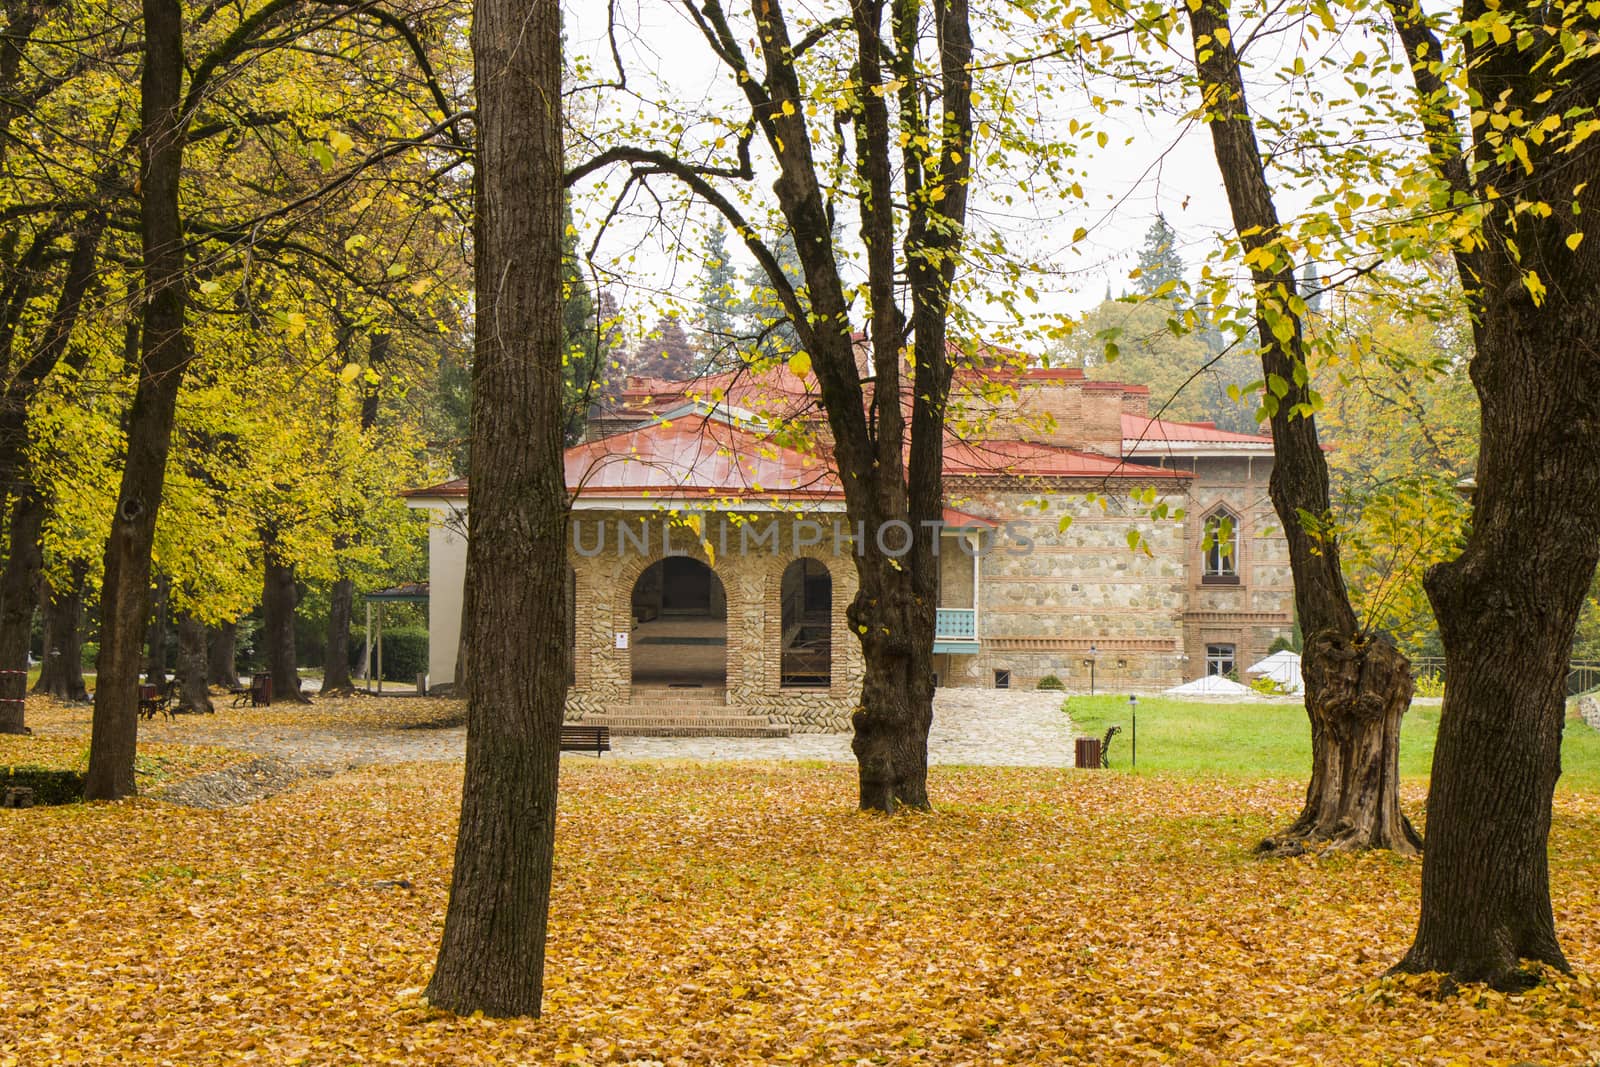 Park and garden in Tsinandali, Kakheti, Georgia. Autumn park landscape.